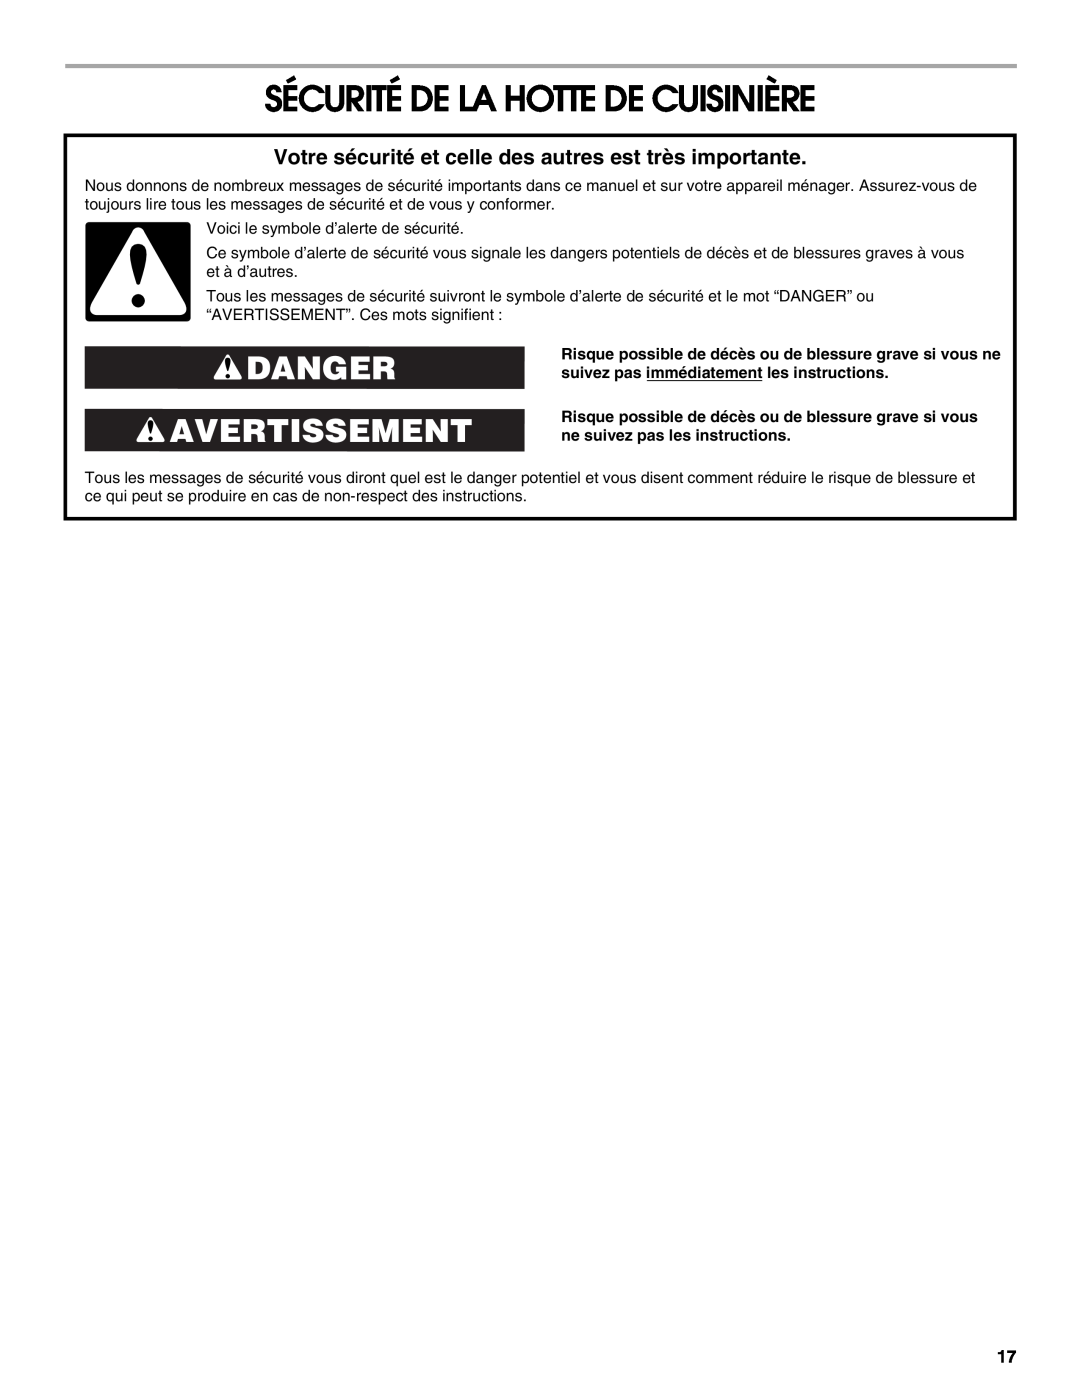 Whirlpool UXT5230AYW installation instructions Sécurité De La Hotte De Cuisinière, Danger Avertissement 